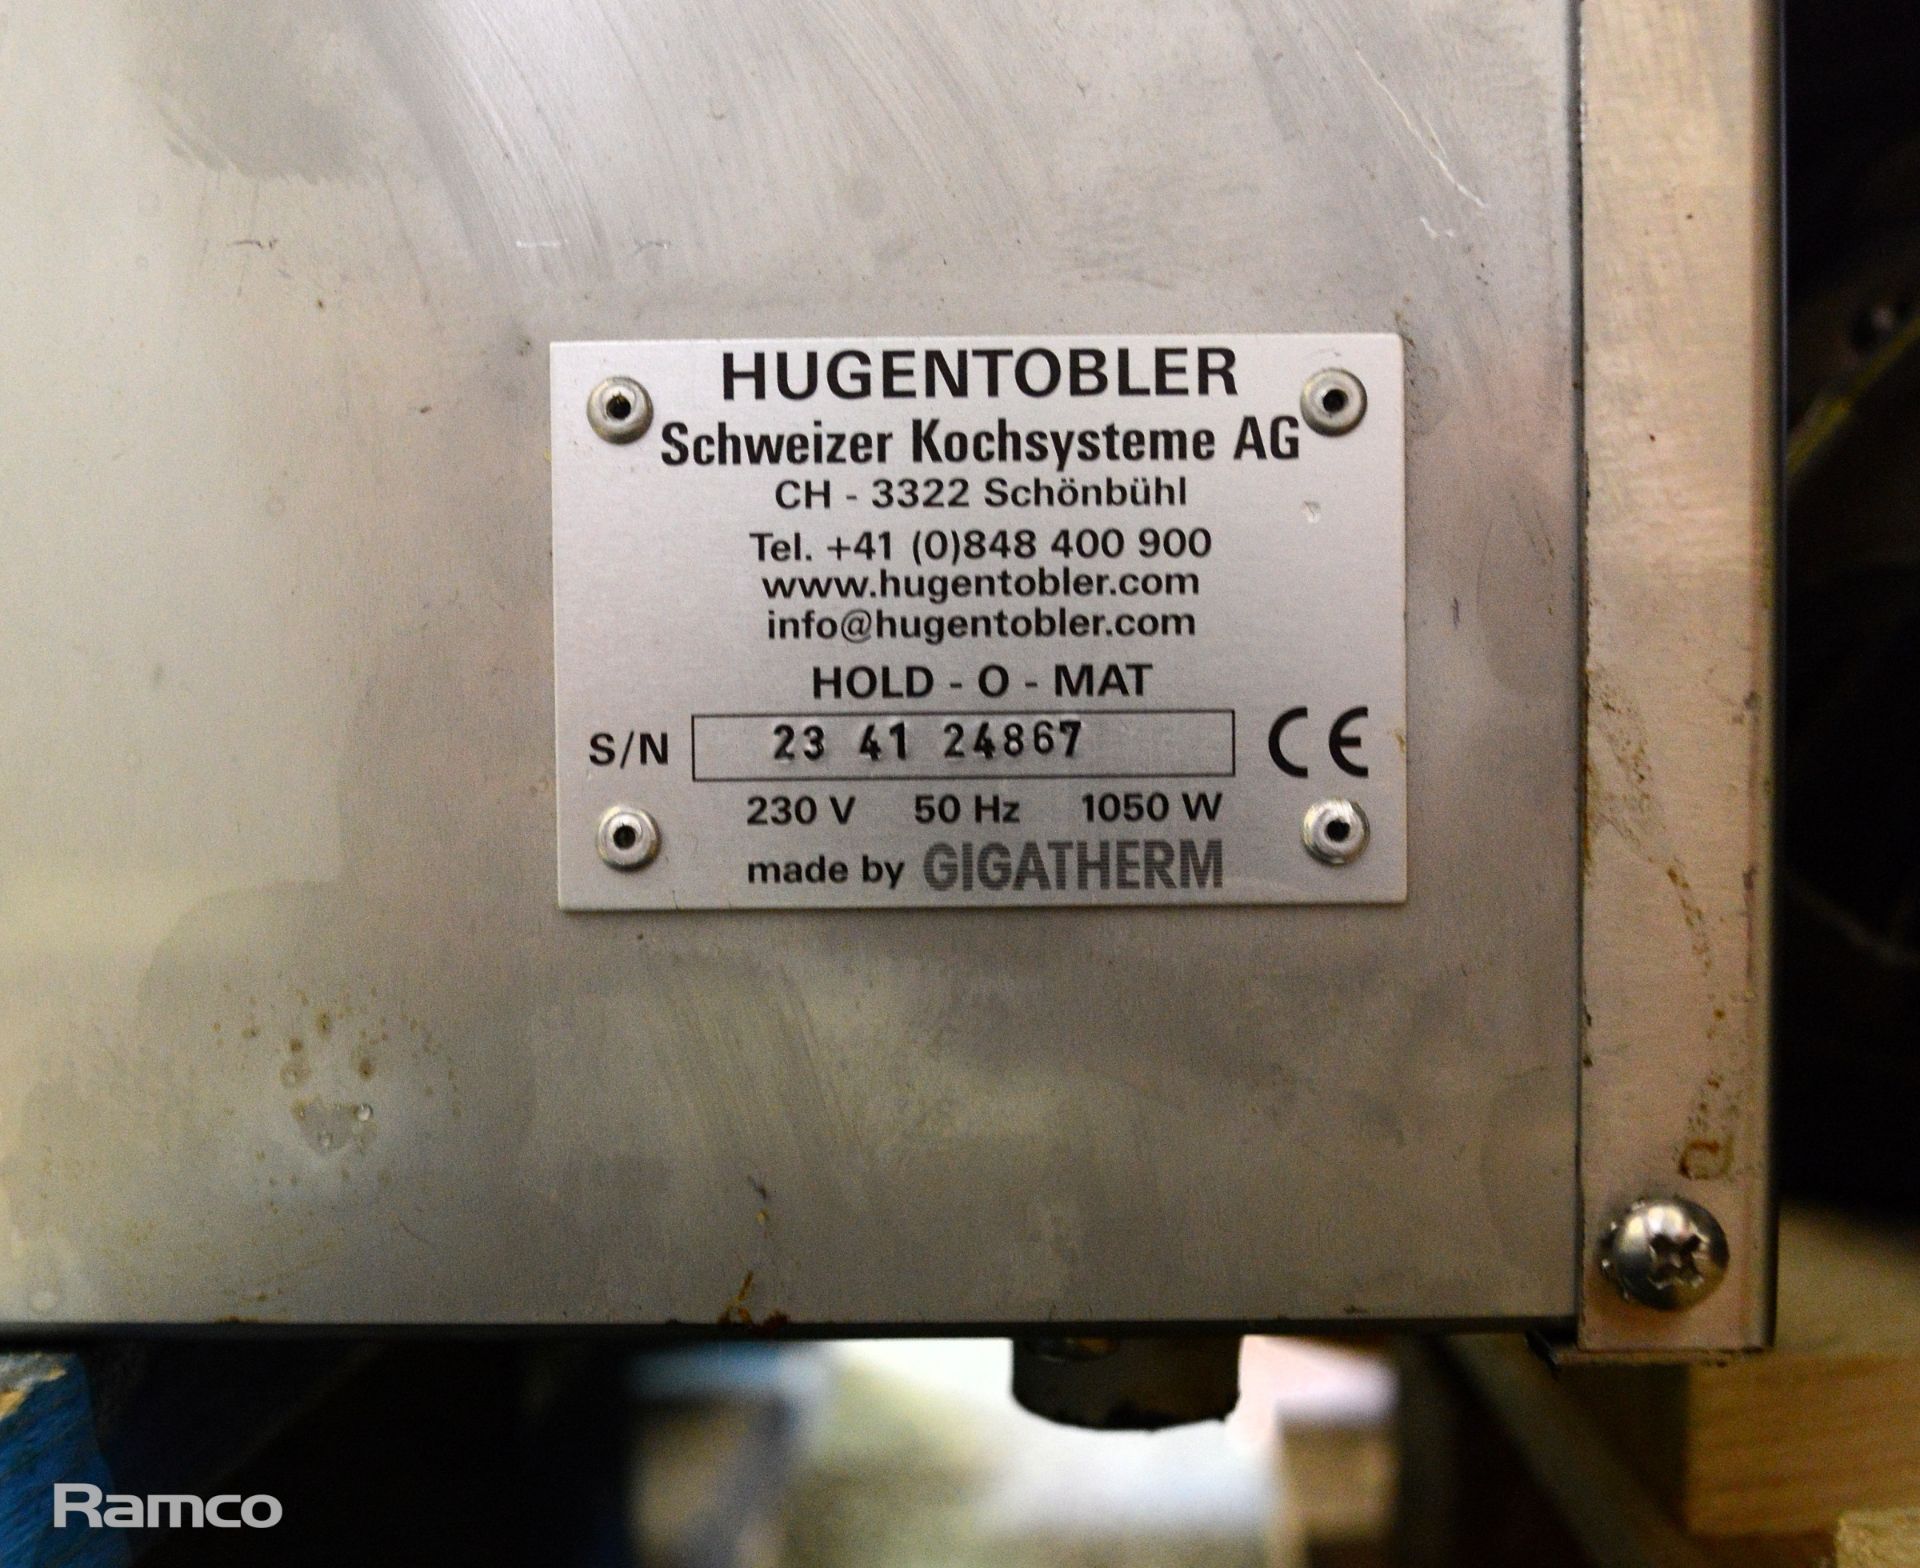 Hugentobler Hold-o-mat food warming oven 60x40x33cm - Image 4 of 4